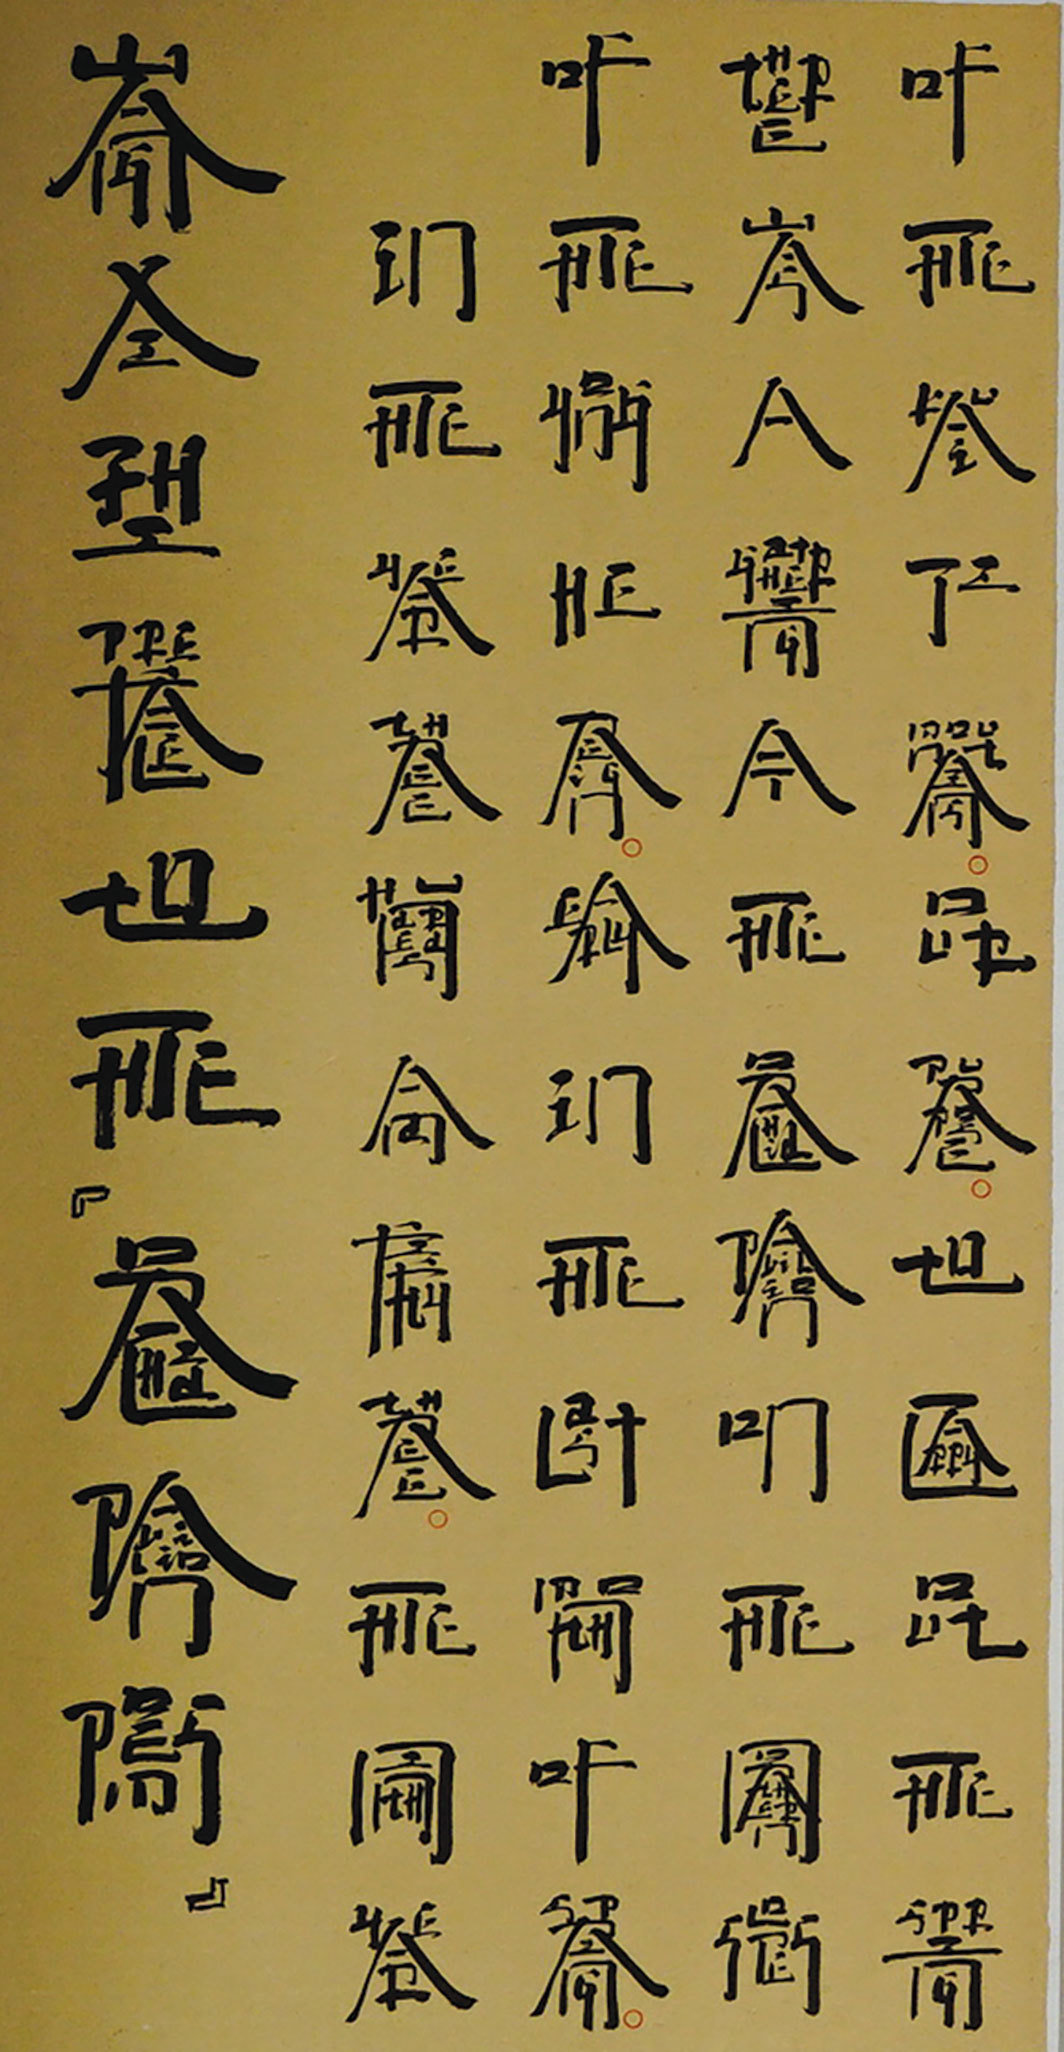 徐冰，《英文方块字书法》（局部），1994-2018，纸本水墨，六联，每联74 × 39"。